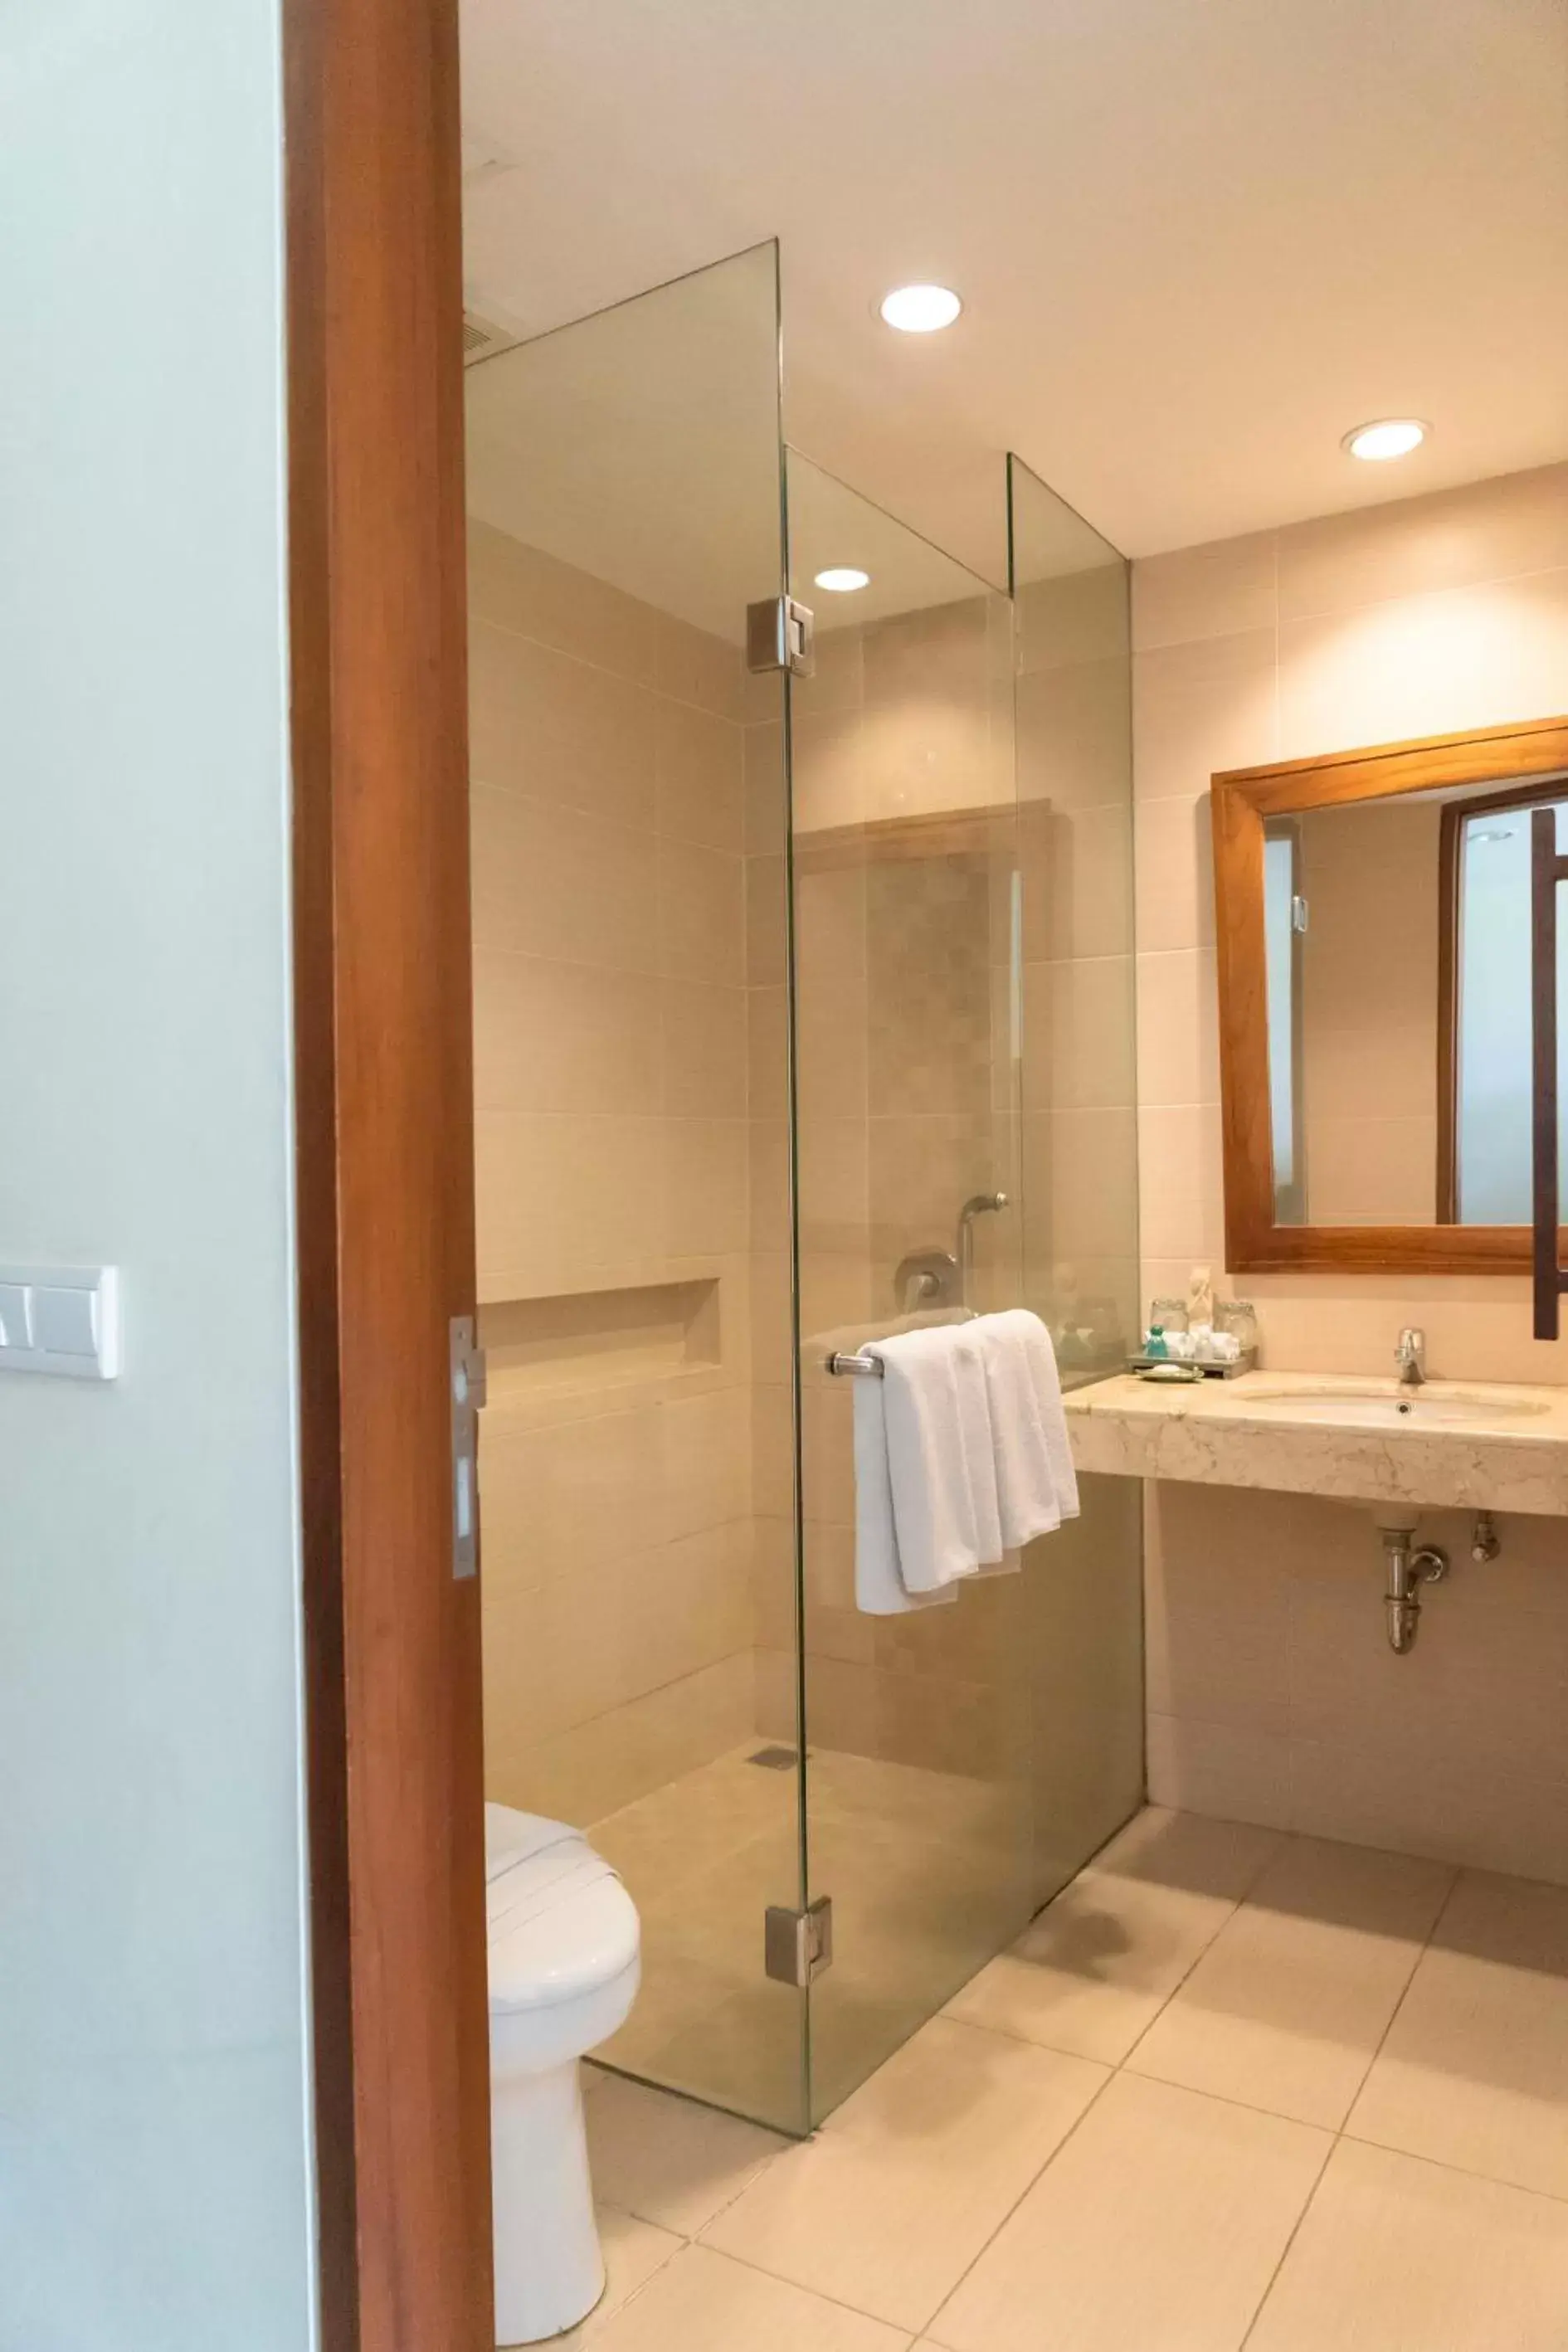 Bedroom, Bathroom in Ketapang Indah Hotel